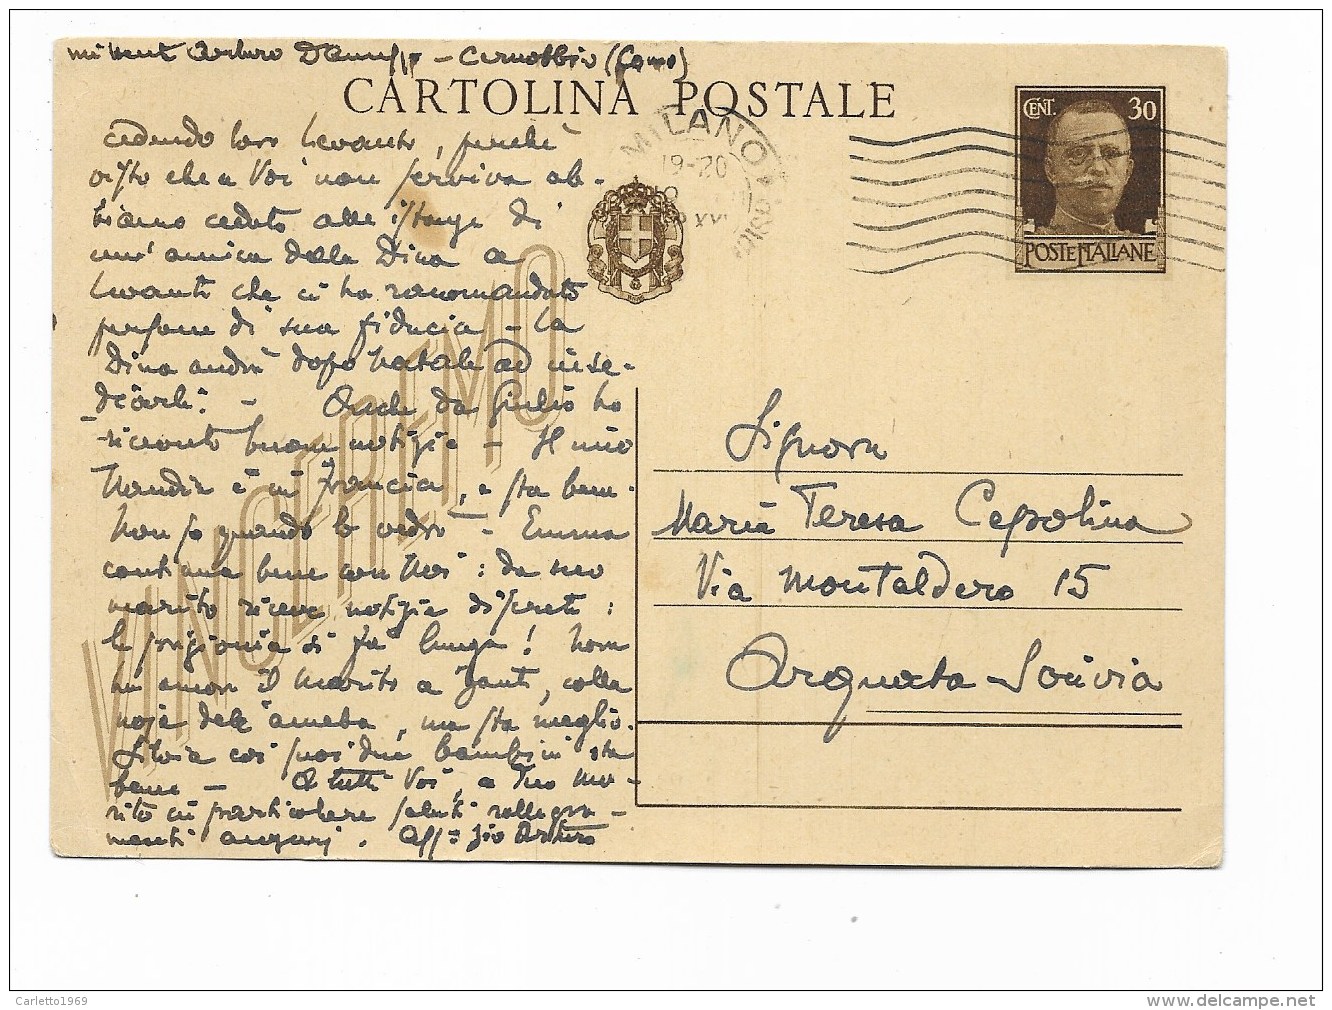 CARTOLINA POSTALE  TIMBRO MILANO COMO 1942  - VIAGGIATA FG - Geschiedenis